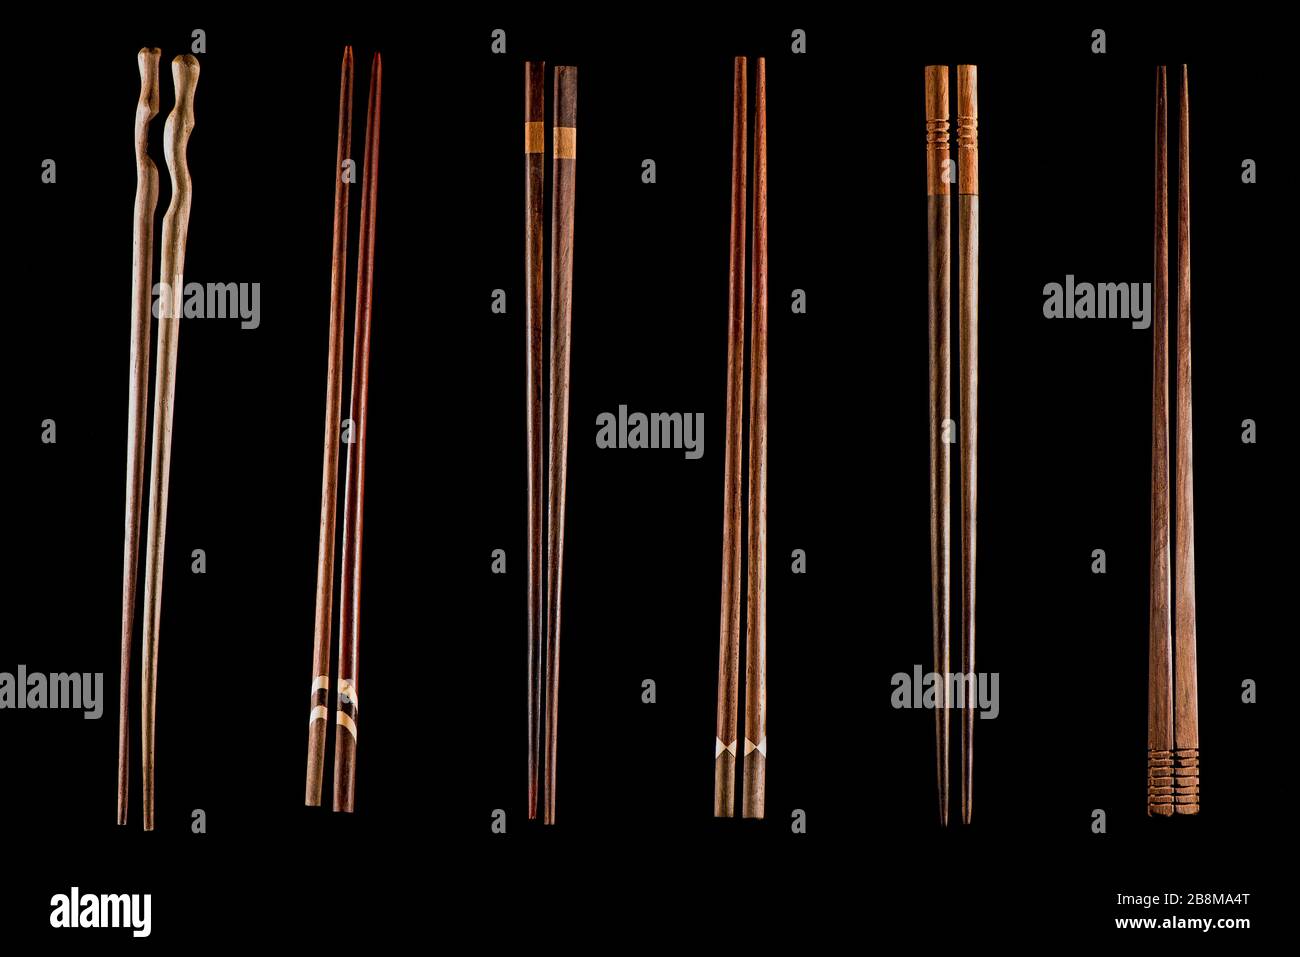 Différents bâtons en bois sur fond noir. Ustensiles de cuisine asiatiques. Apparence du code-barres. Banque D'Images